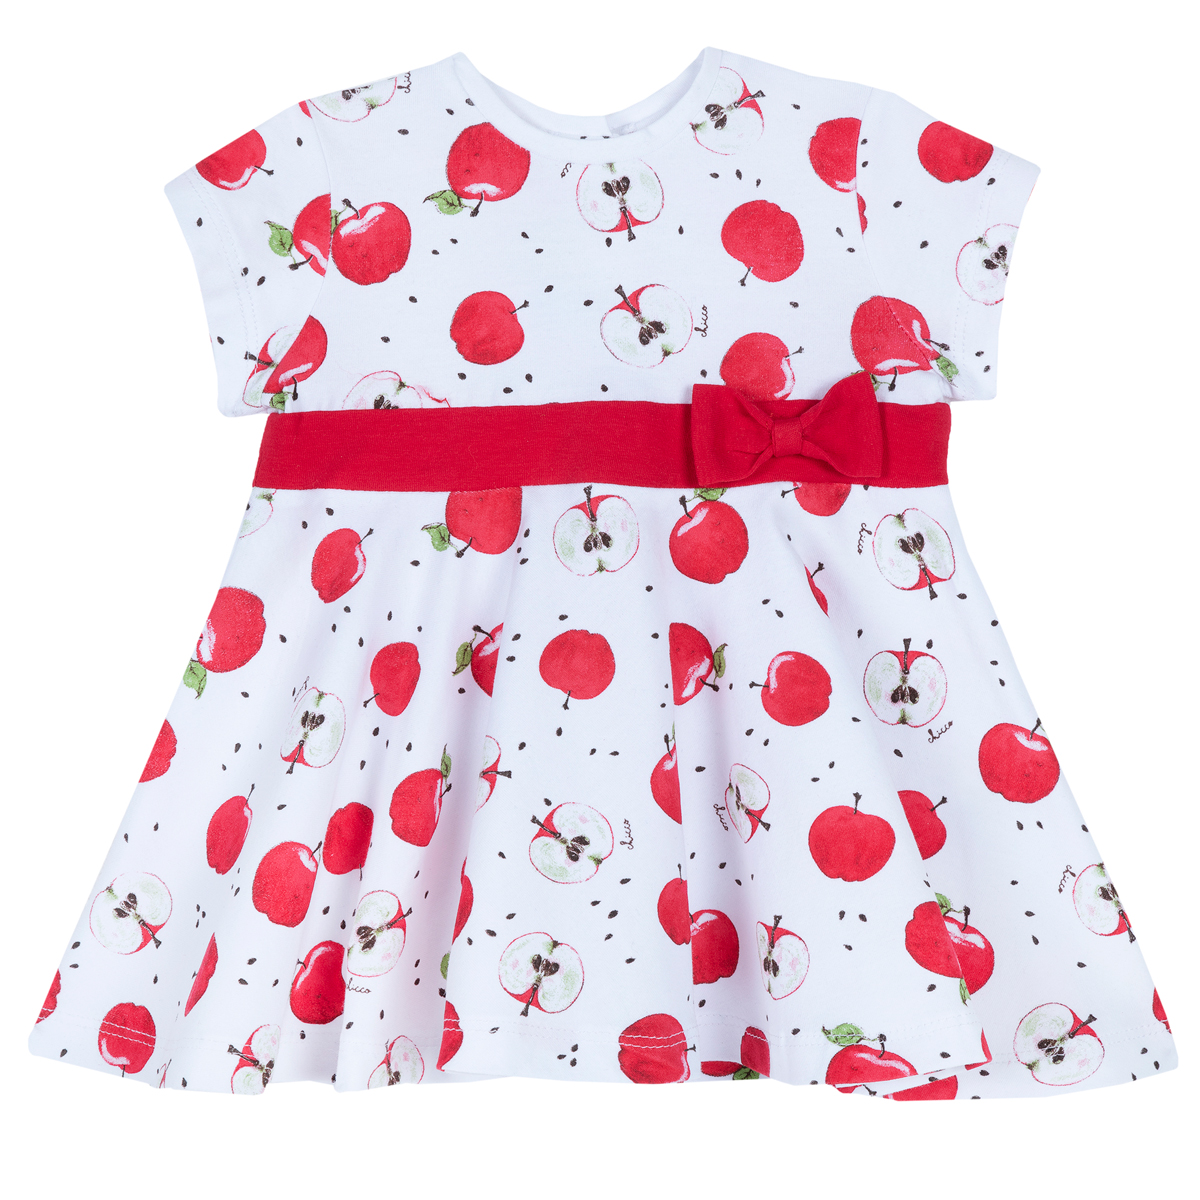 Rochie pentru copii Chicco, alb cu rosu, 03606 03606